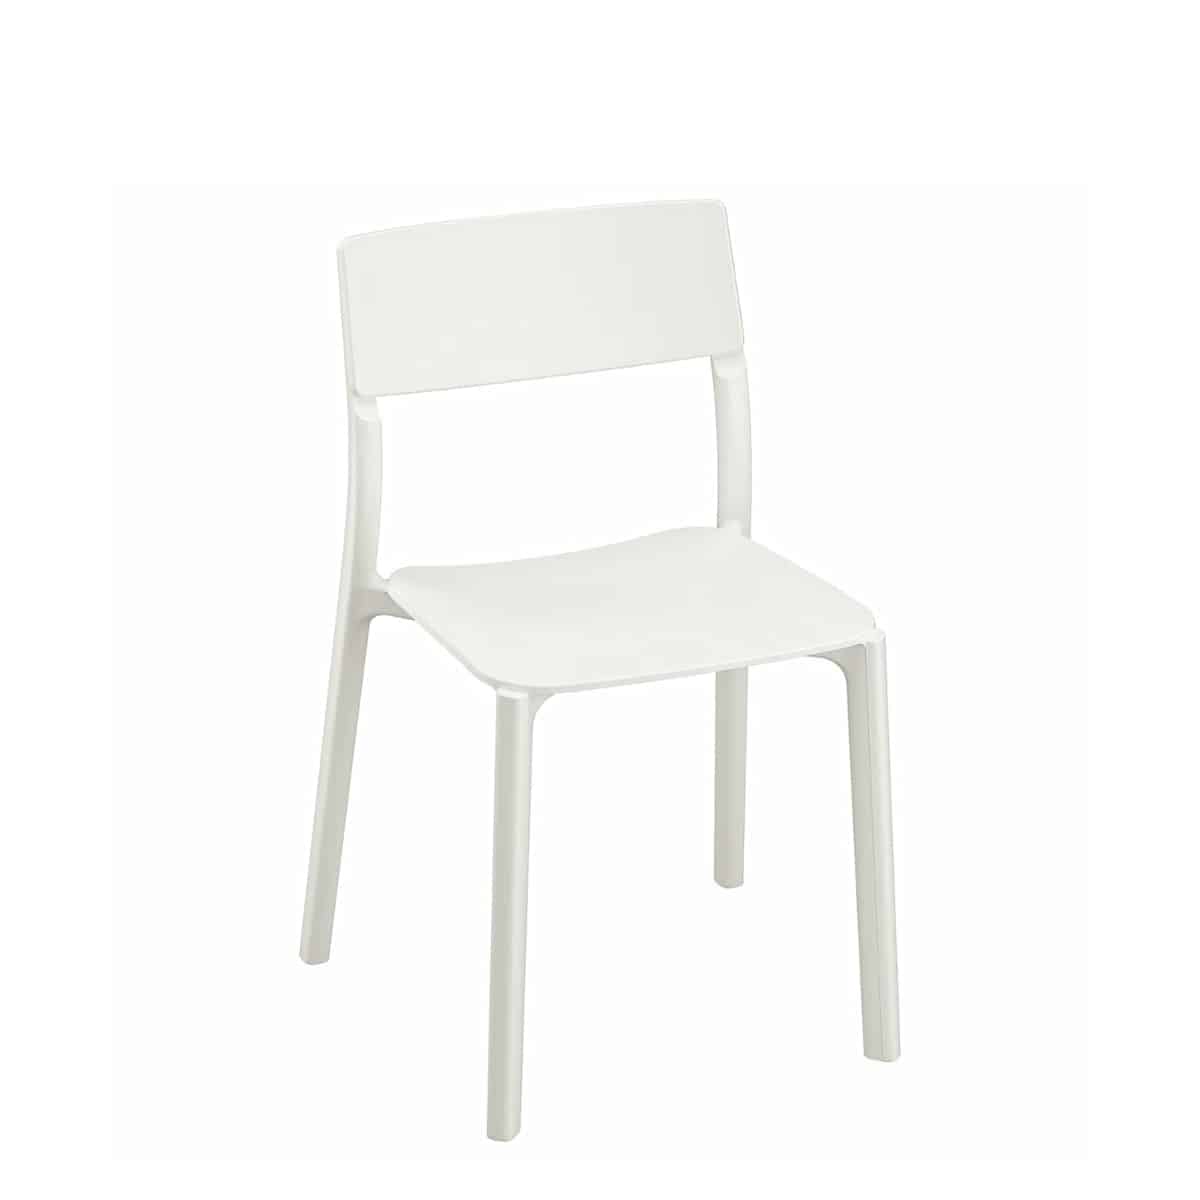 Verbazing Vernauwd getuigenis Jannie stapelstoelen / horeca stoelen wit - Super Seat